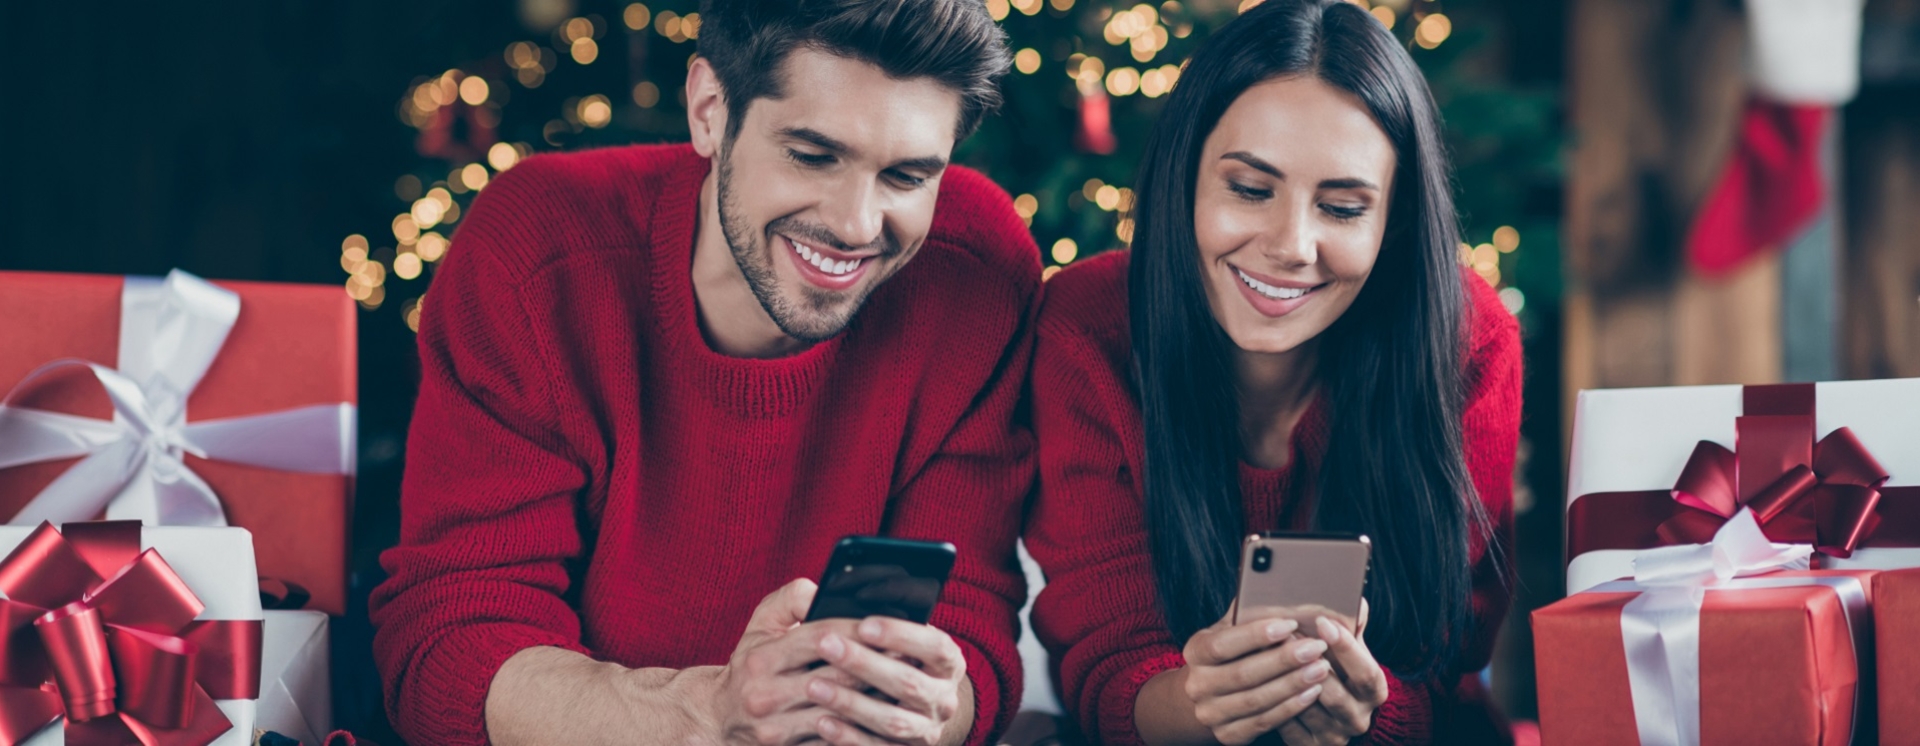 Η εξέλιξη των smartphones σε μία σύντομη χριστουγεννιάτικη ιστορία